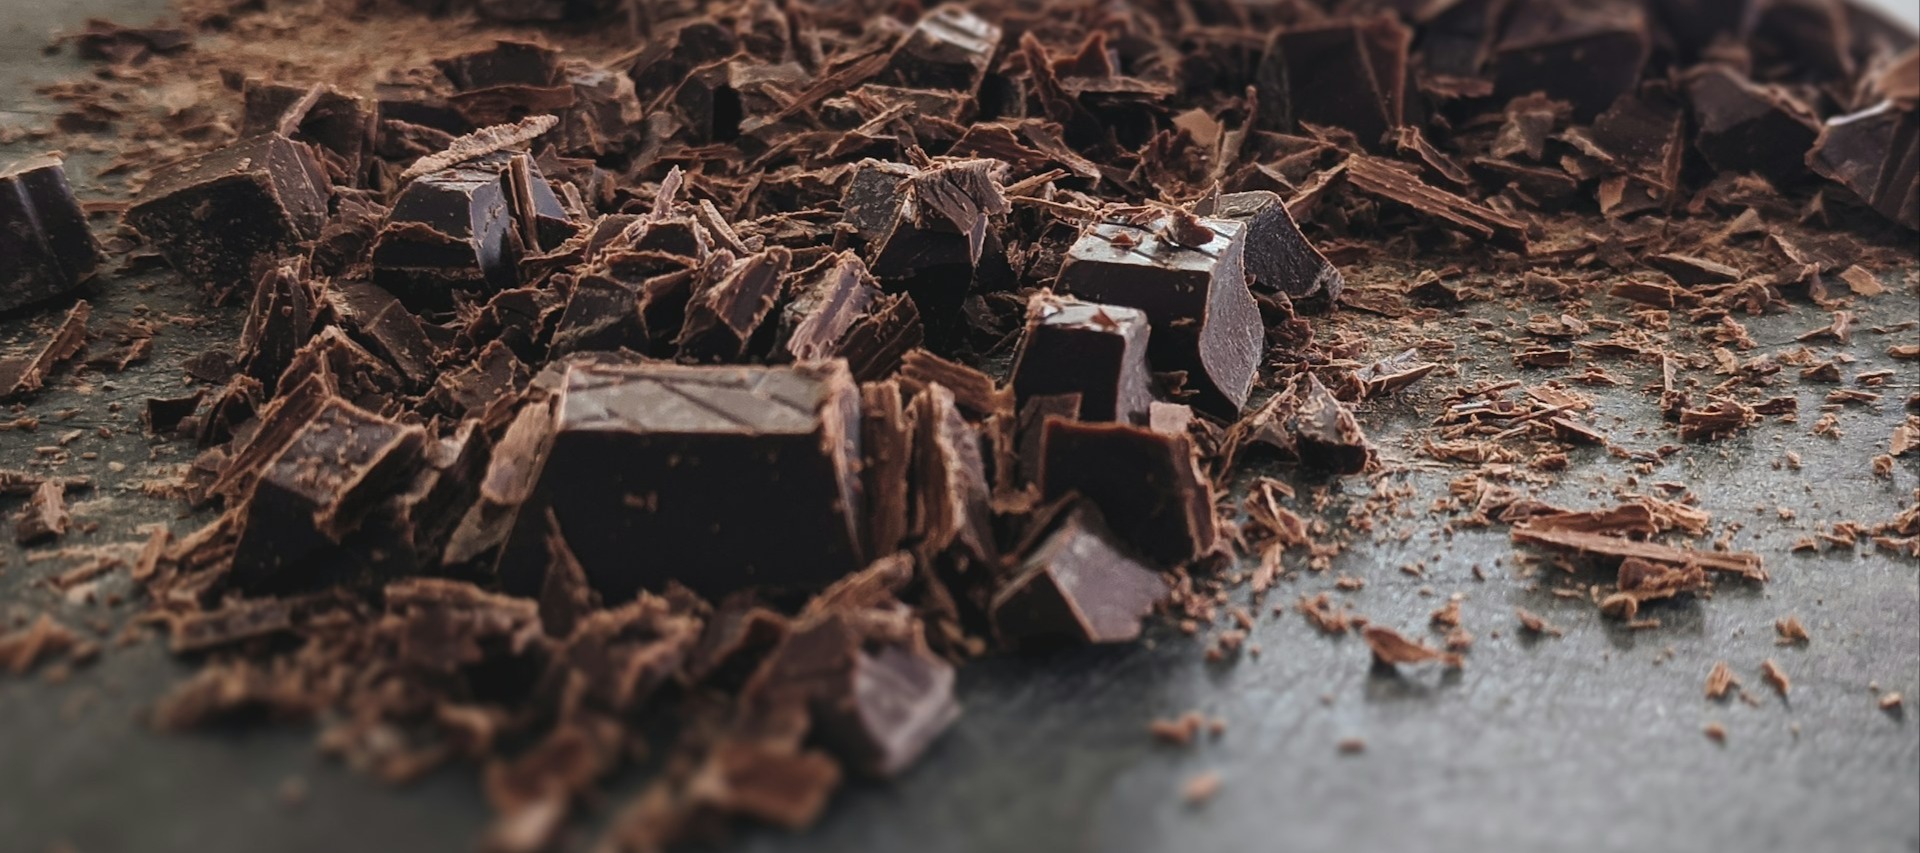 Фото новости: "Чего ждать от «шоколадного кризиса»: какао-бобы подорожали в пять раз за год"